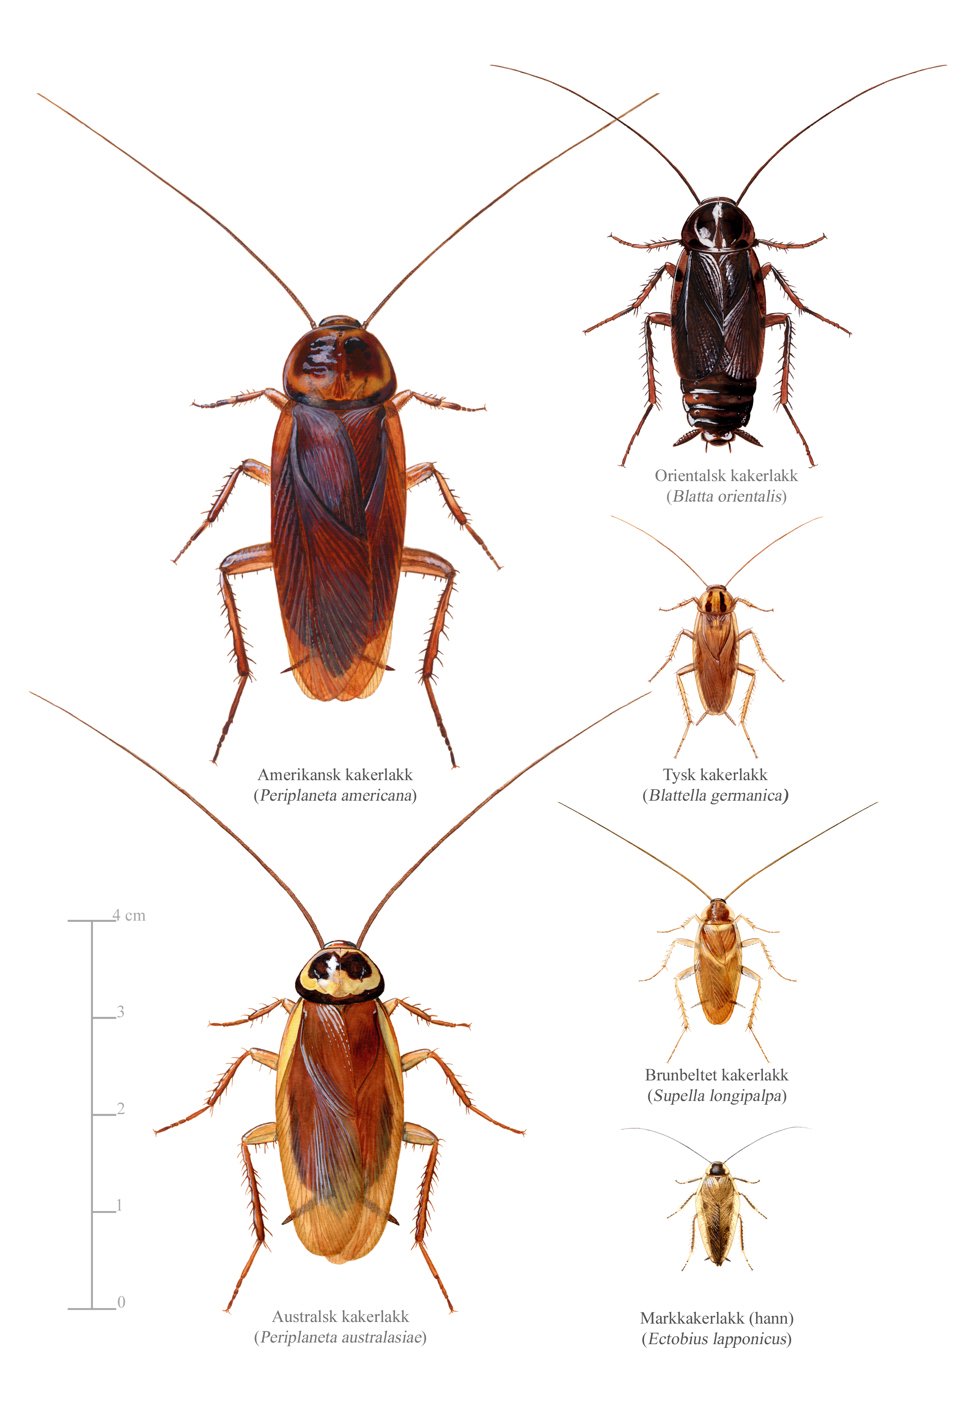 Noen vanlige arter av kakerlakker gjengitt i tilnærmet riktig størrelse i forhold til hverandre